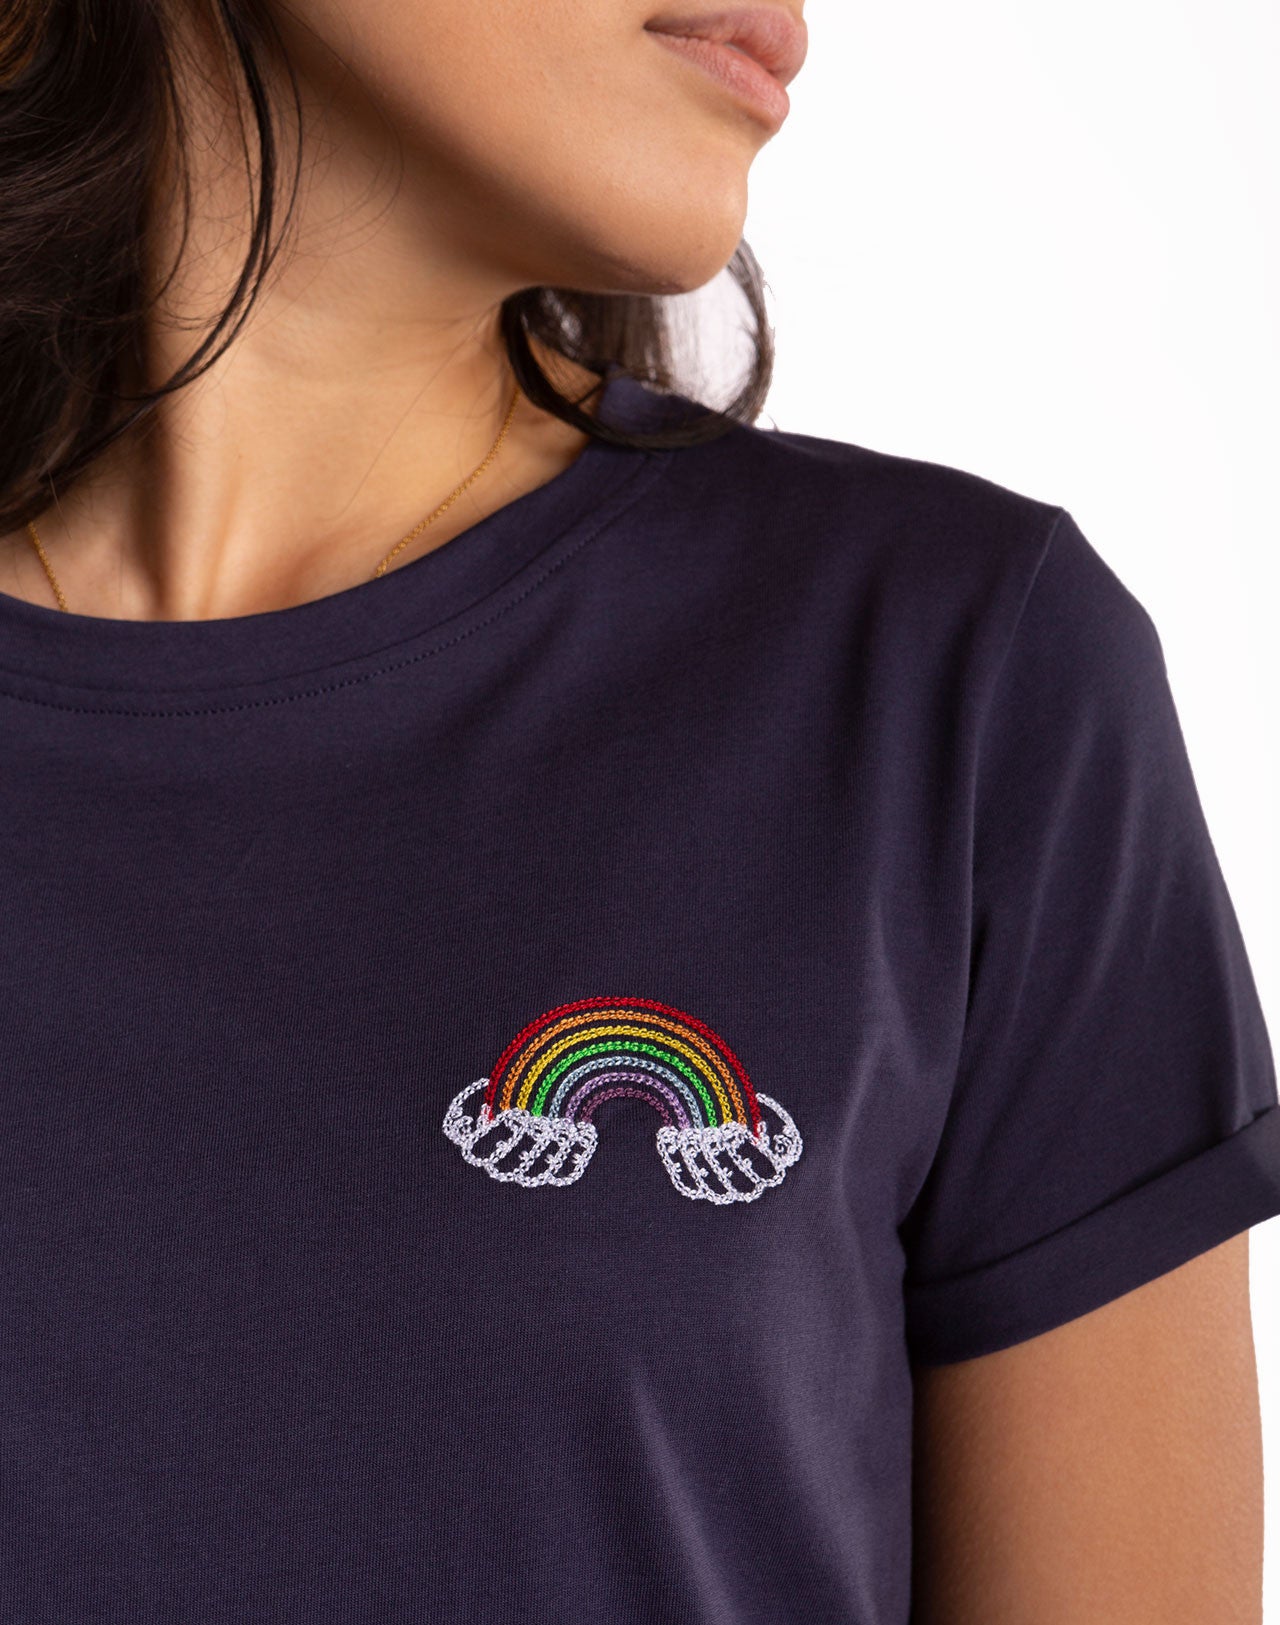 Olow x Mr. Zhuravchik - Rainbow Girl t-shirt